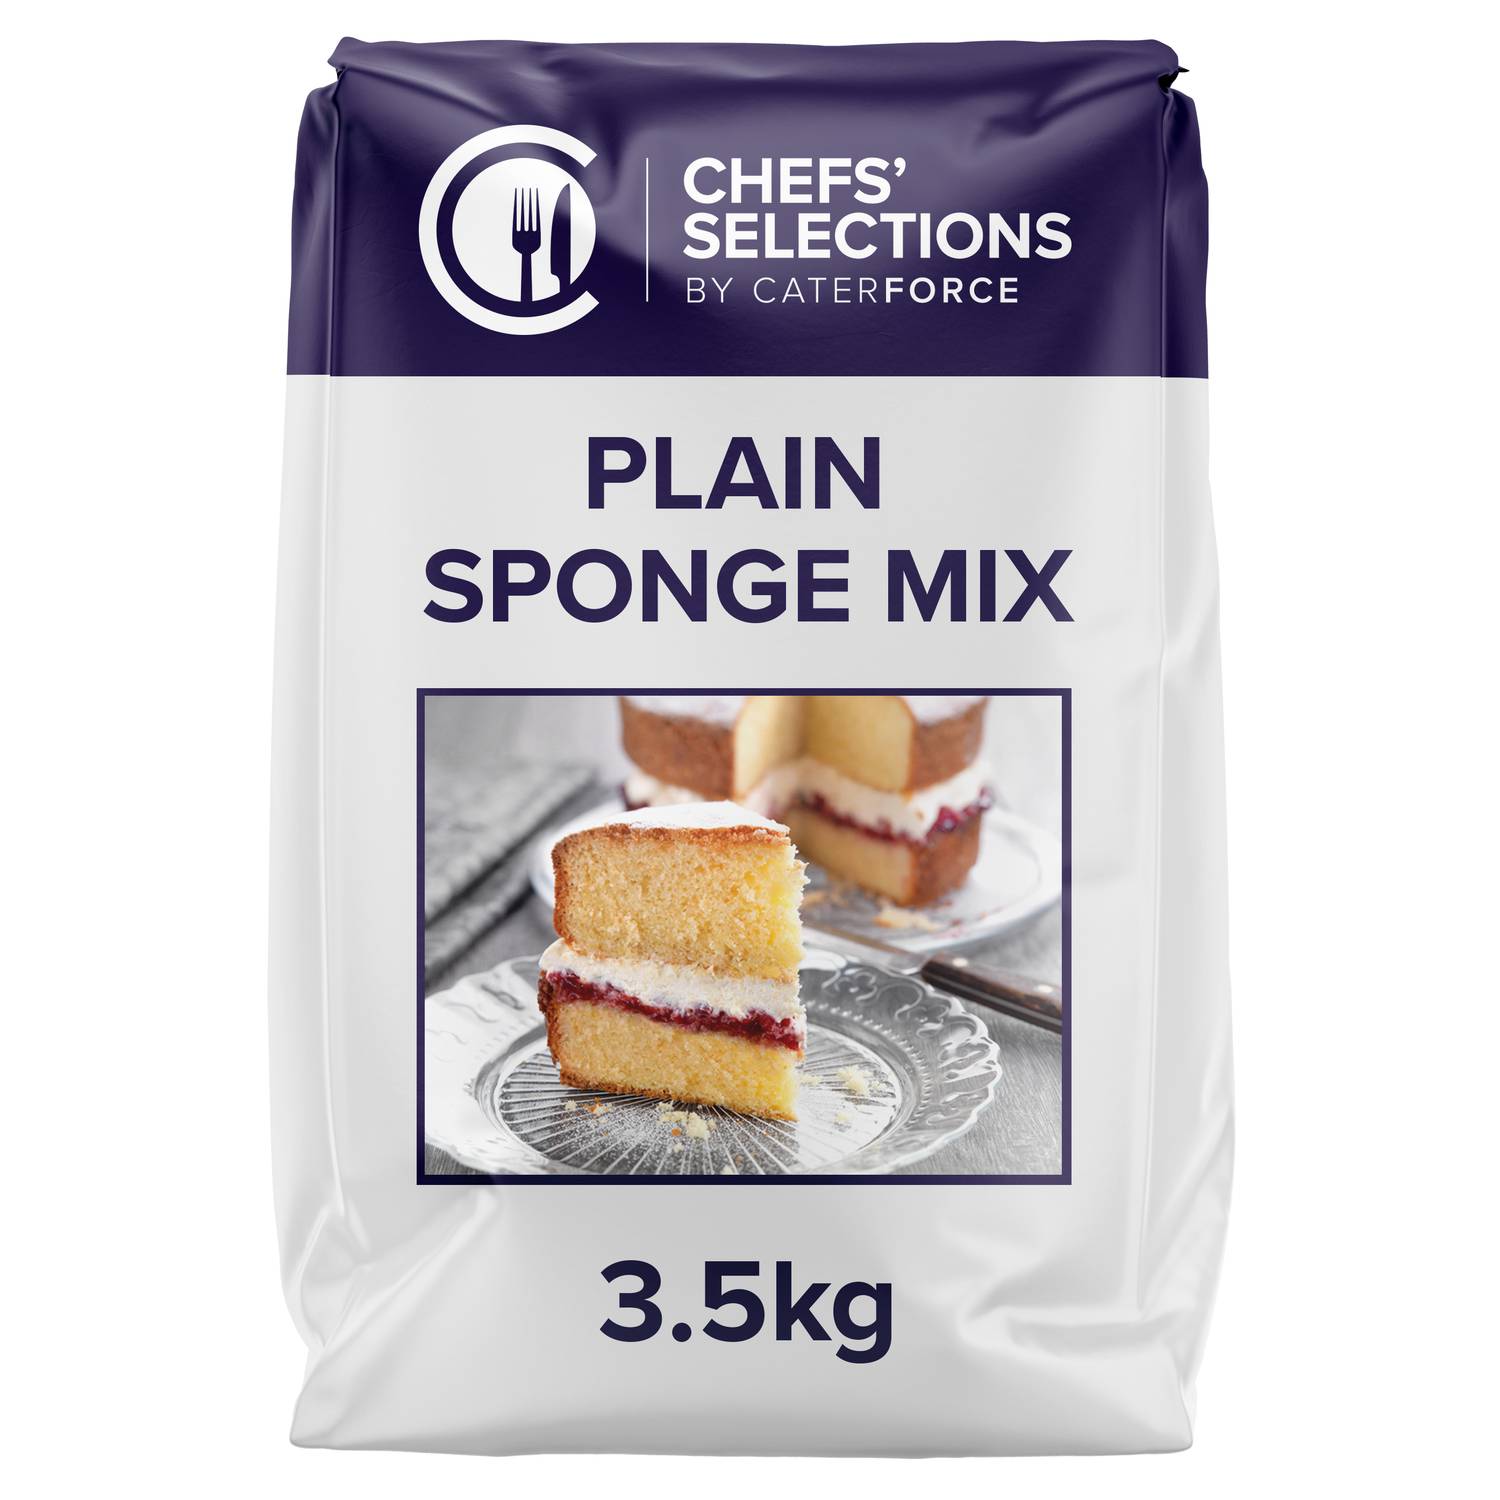 Chefs’ Selections Plain Sponge Mix (4 x 3.5kg)